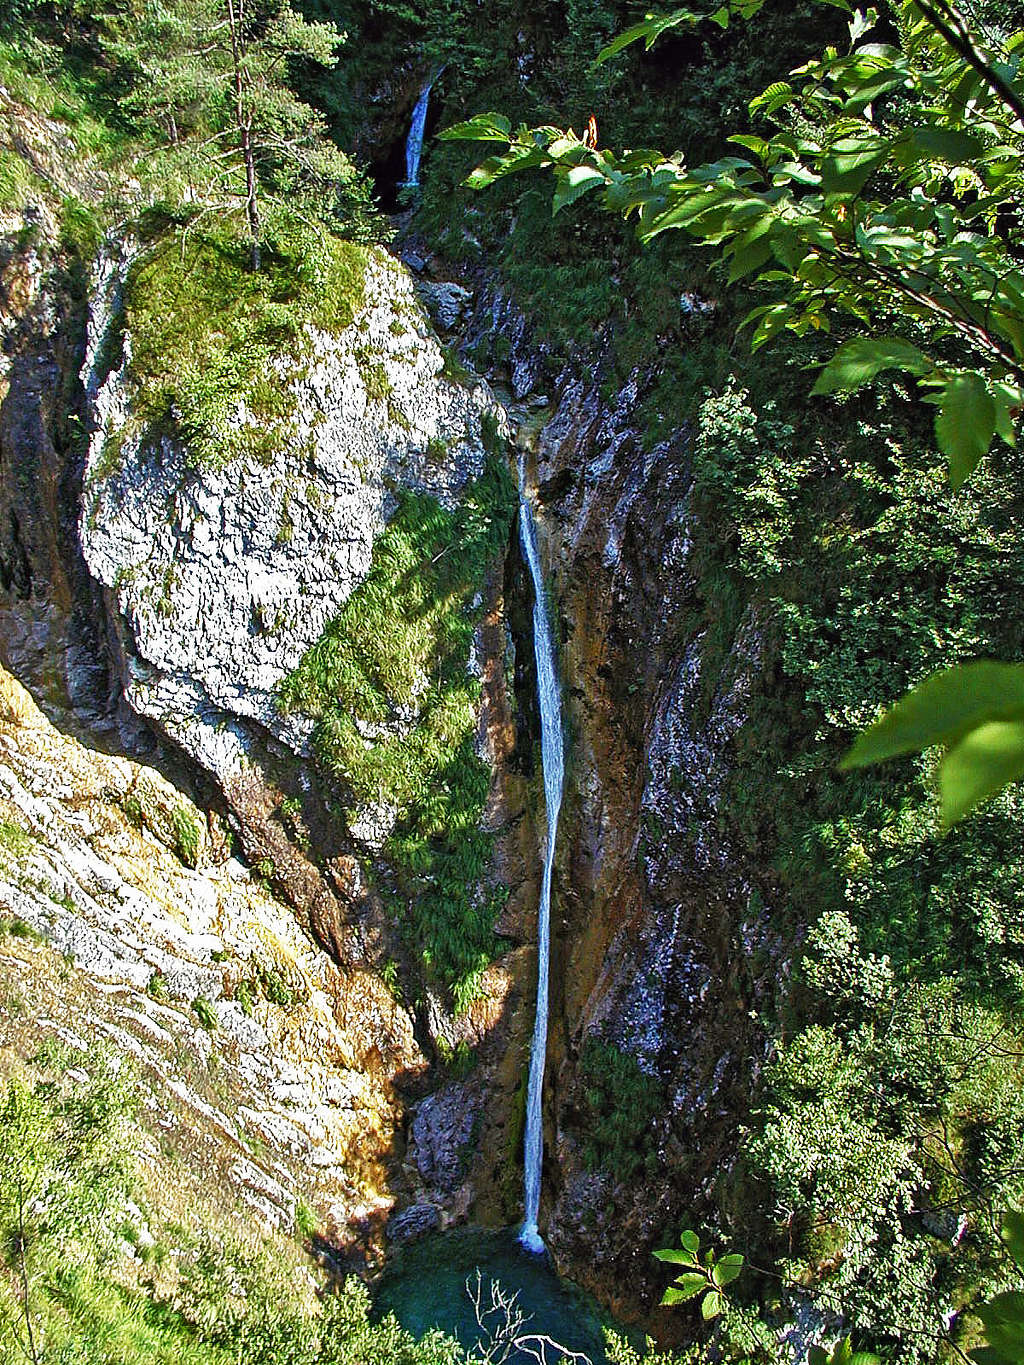 Pršjak waterfall